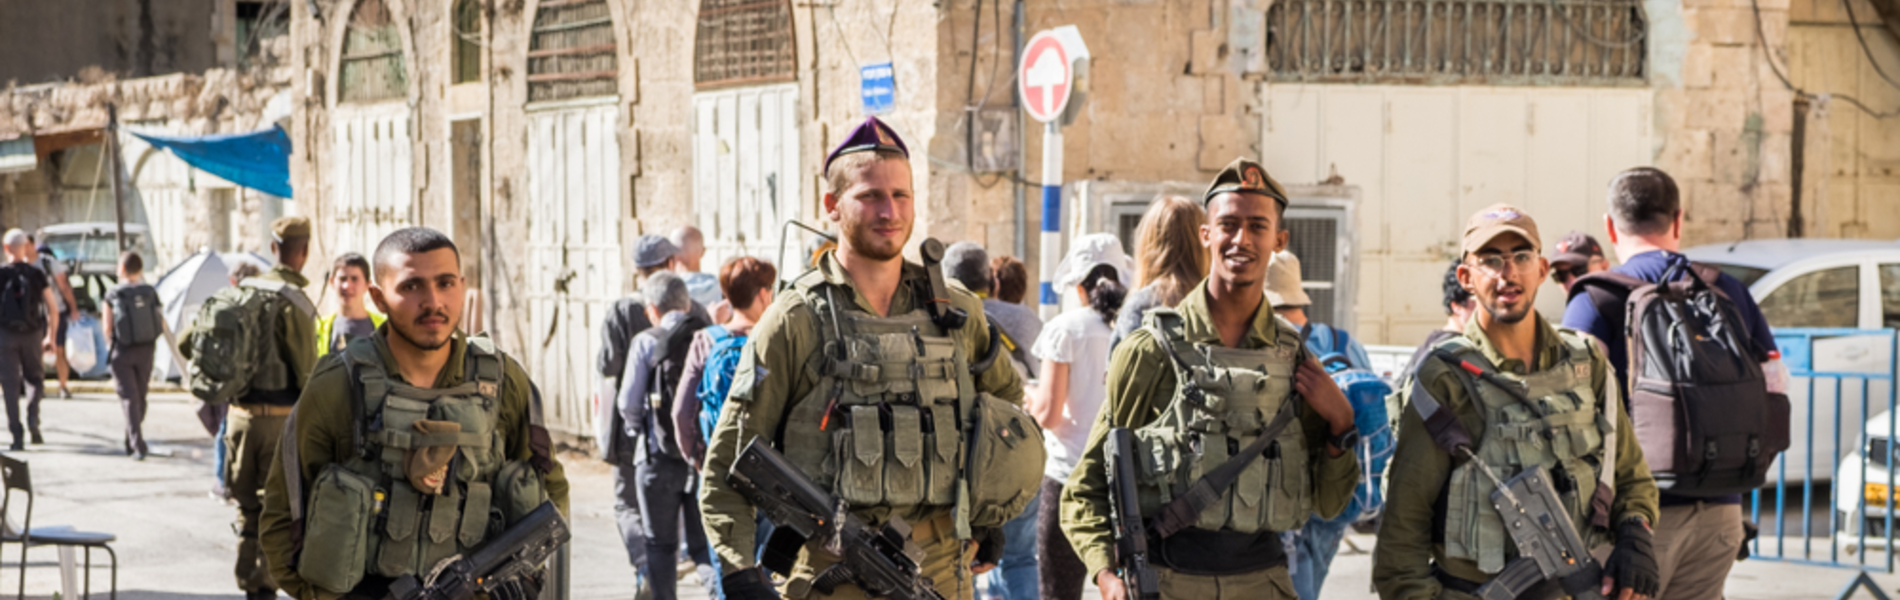 חמוטל גורי: ישראל חזקה בביטחון אבל חלשה בשוויון מגדרי